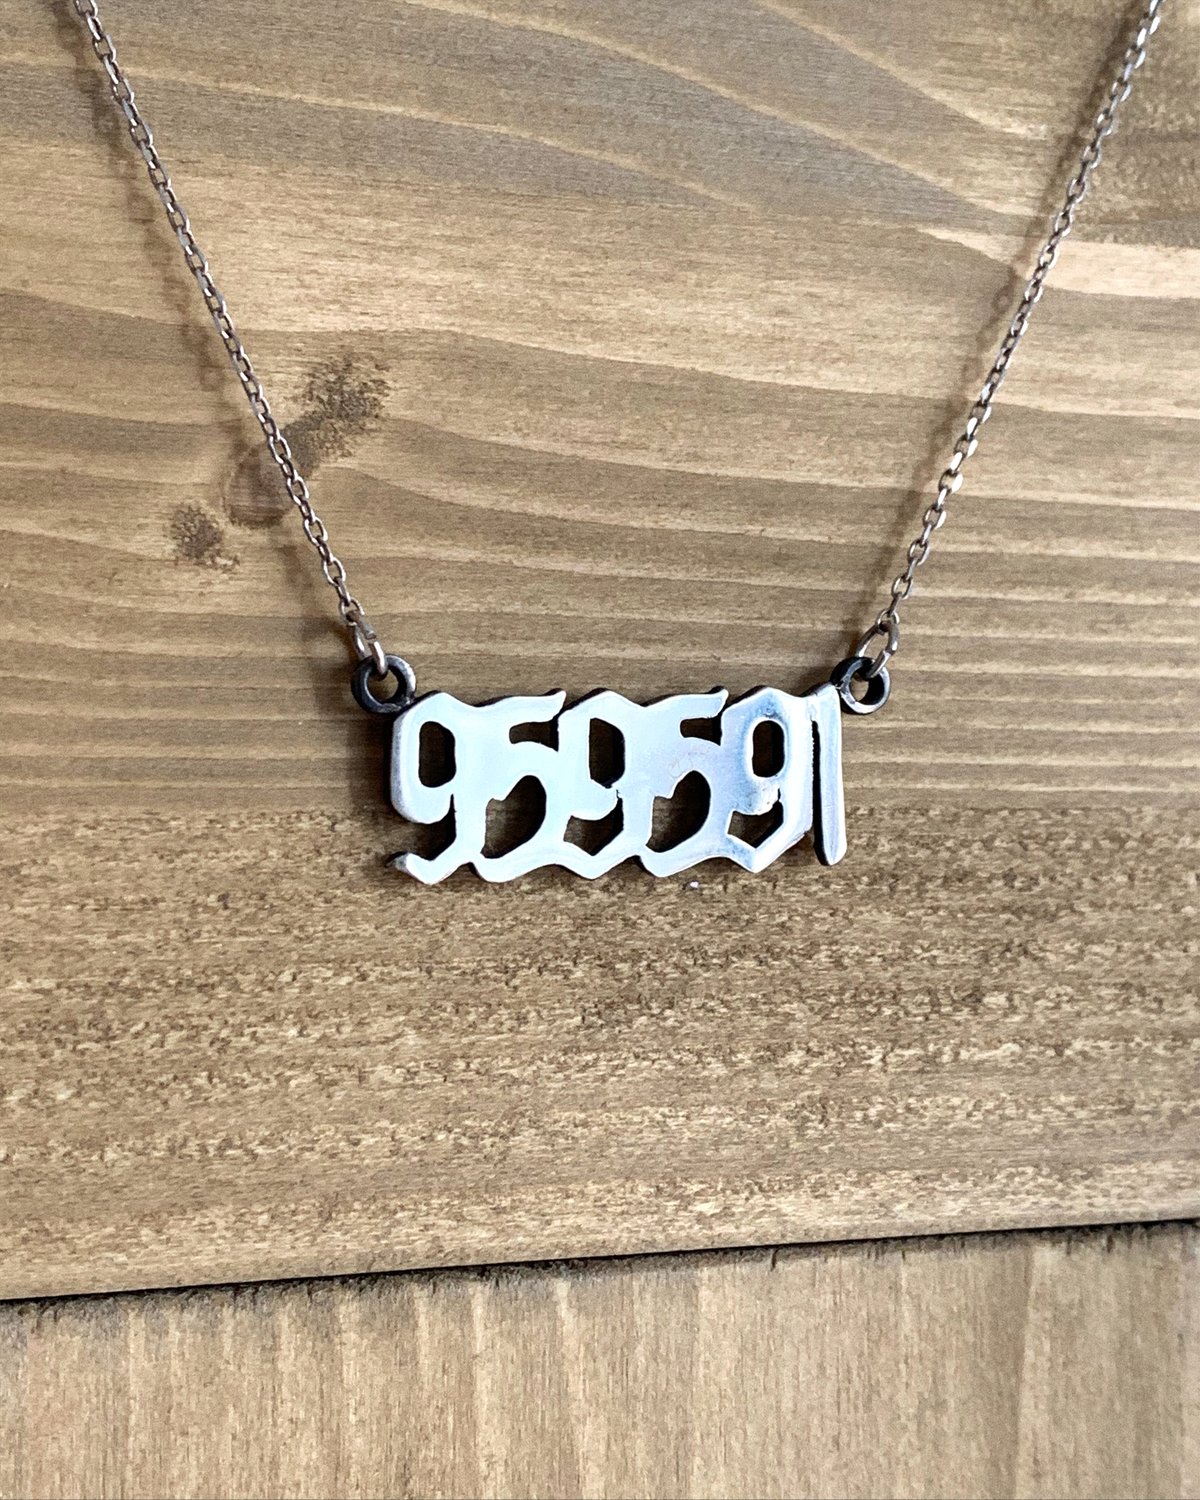 Image of "959591" lepokoa - silver necklace